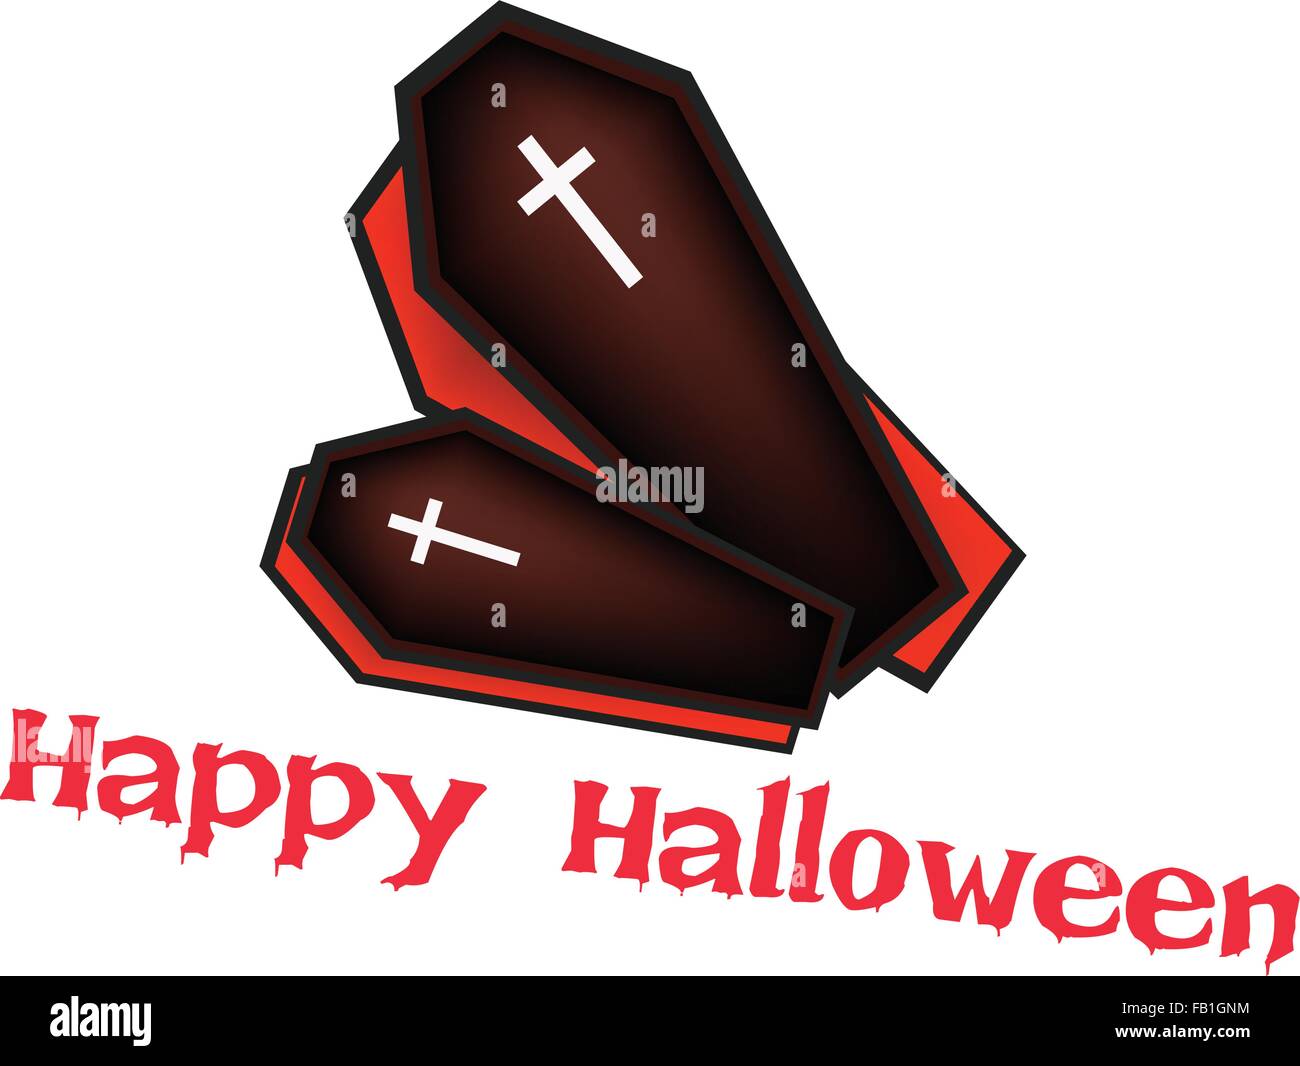 Veranschaulichung der beiden Vampire Särge für Happy Halloween Feier. Stock Vektor